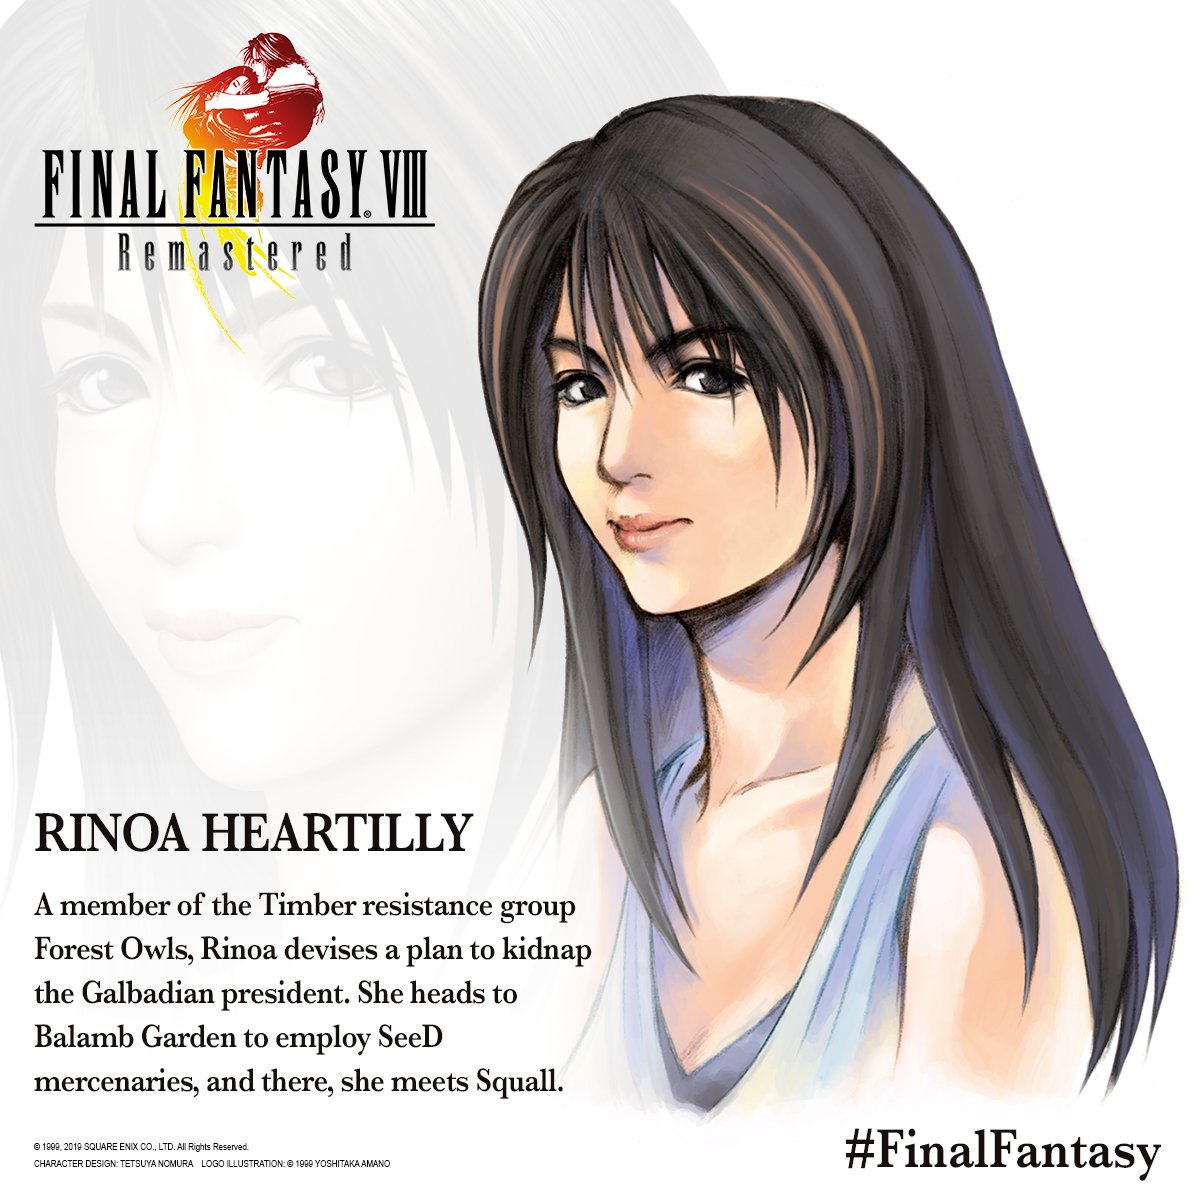 Rinoa Heartilly (Character Profile)

#FinalFantasy #FF8 #FinalFantasy8 #FFVIII #FinalFantasyVIII